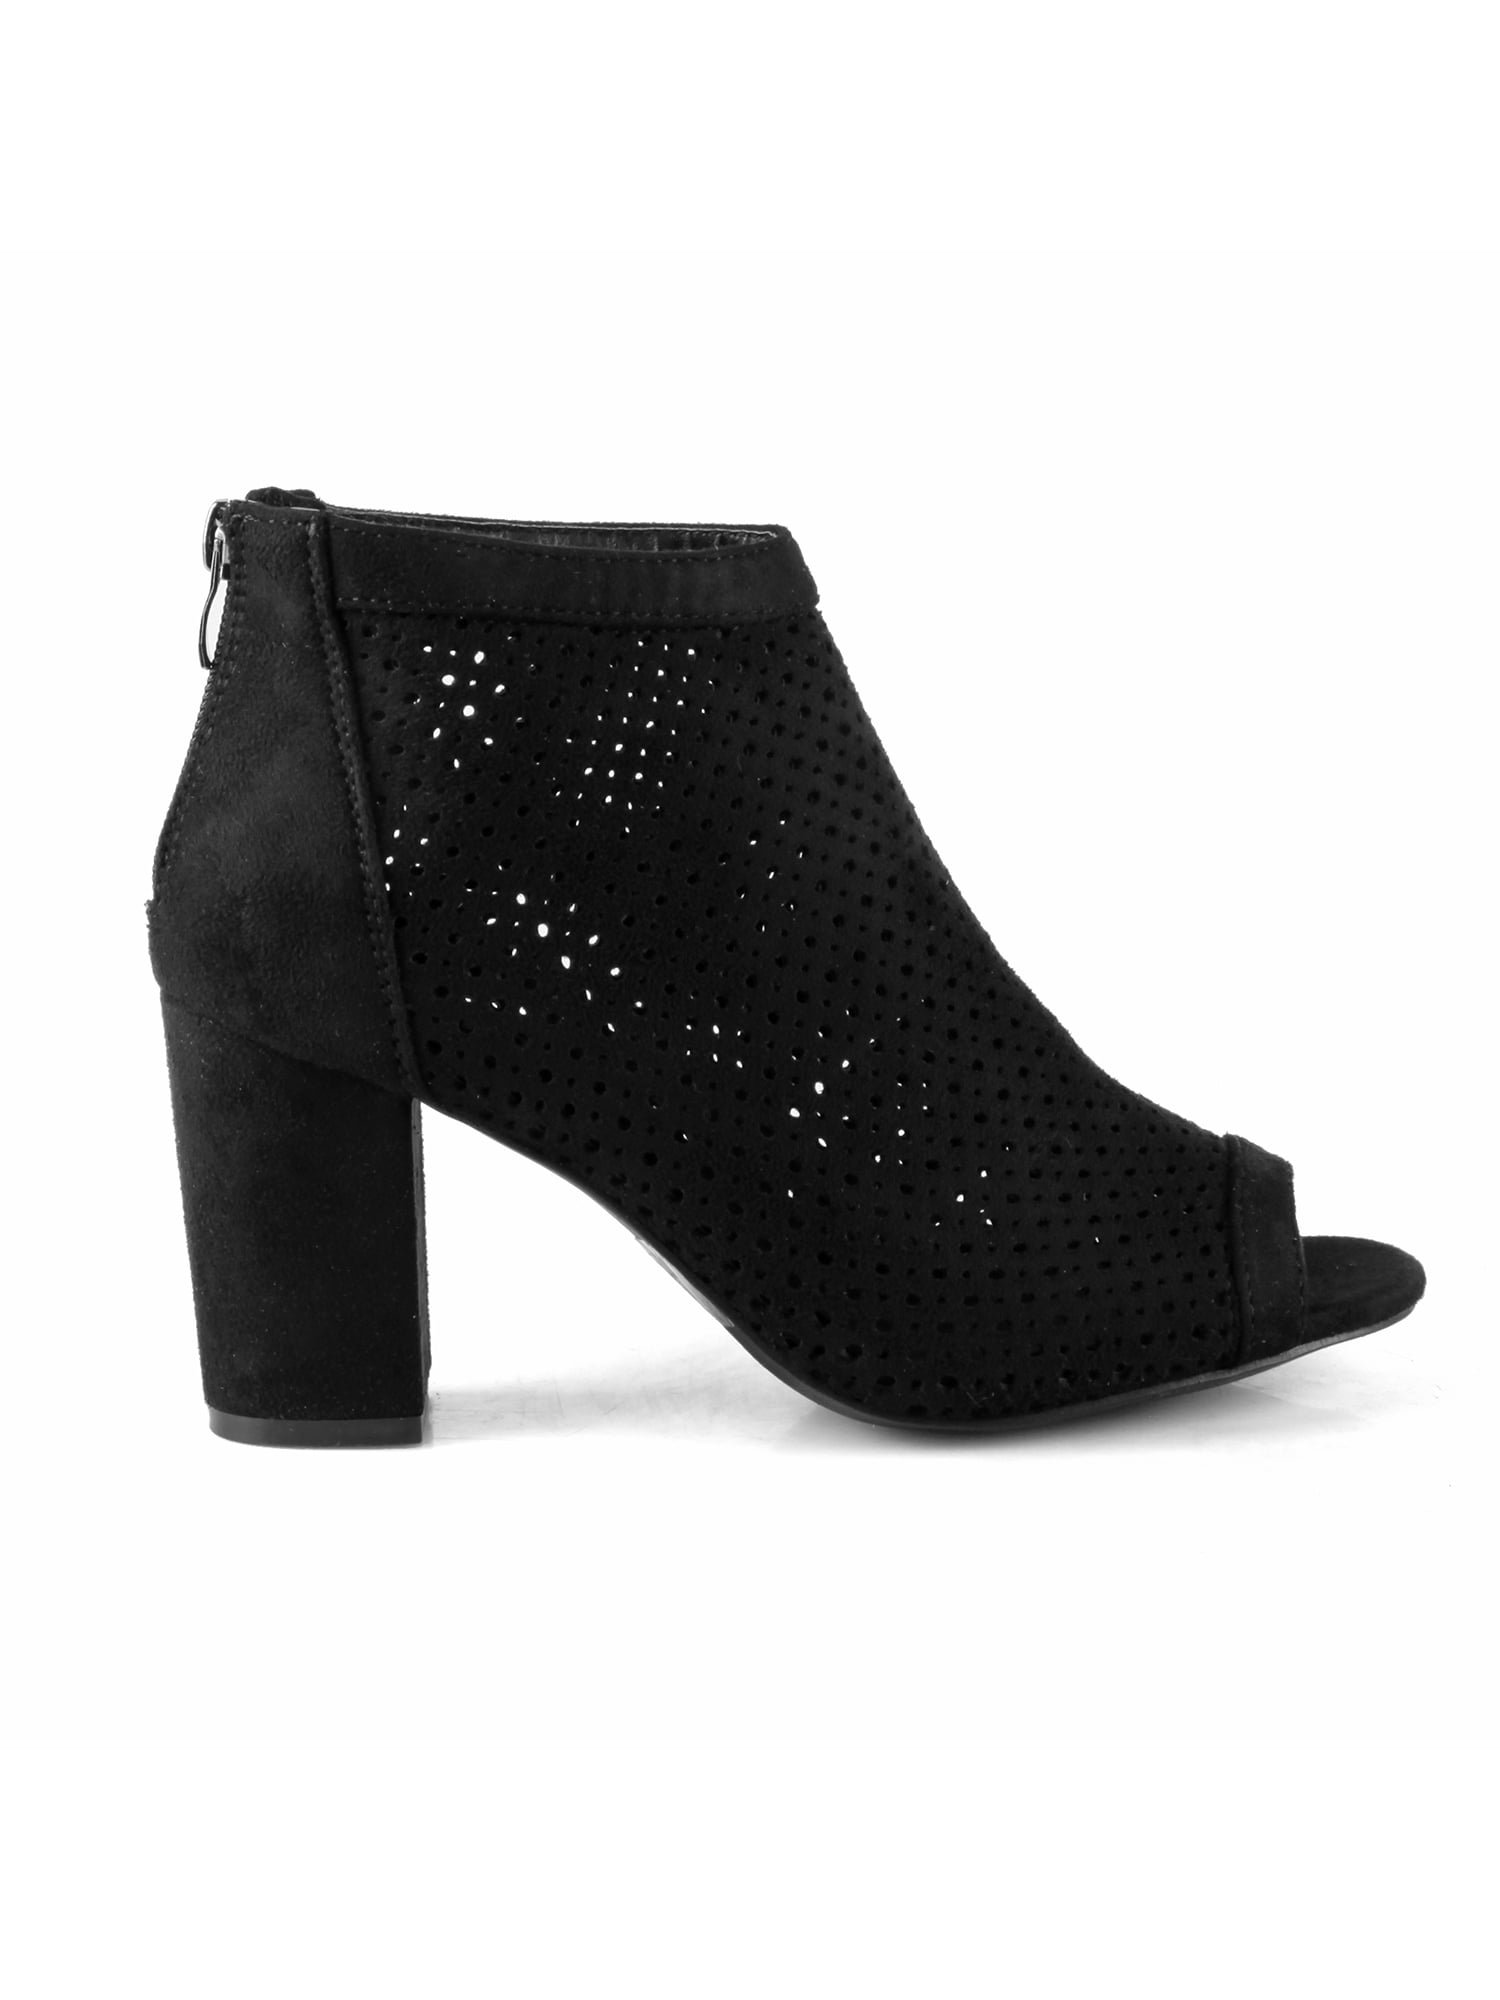 Perforated Women's Open Toe Chunky Heel Booties in Black - Walmart.com